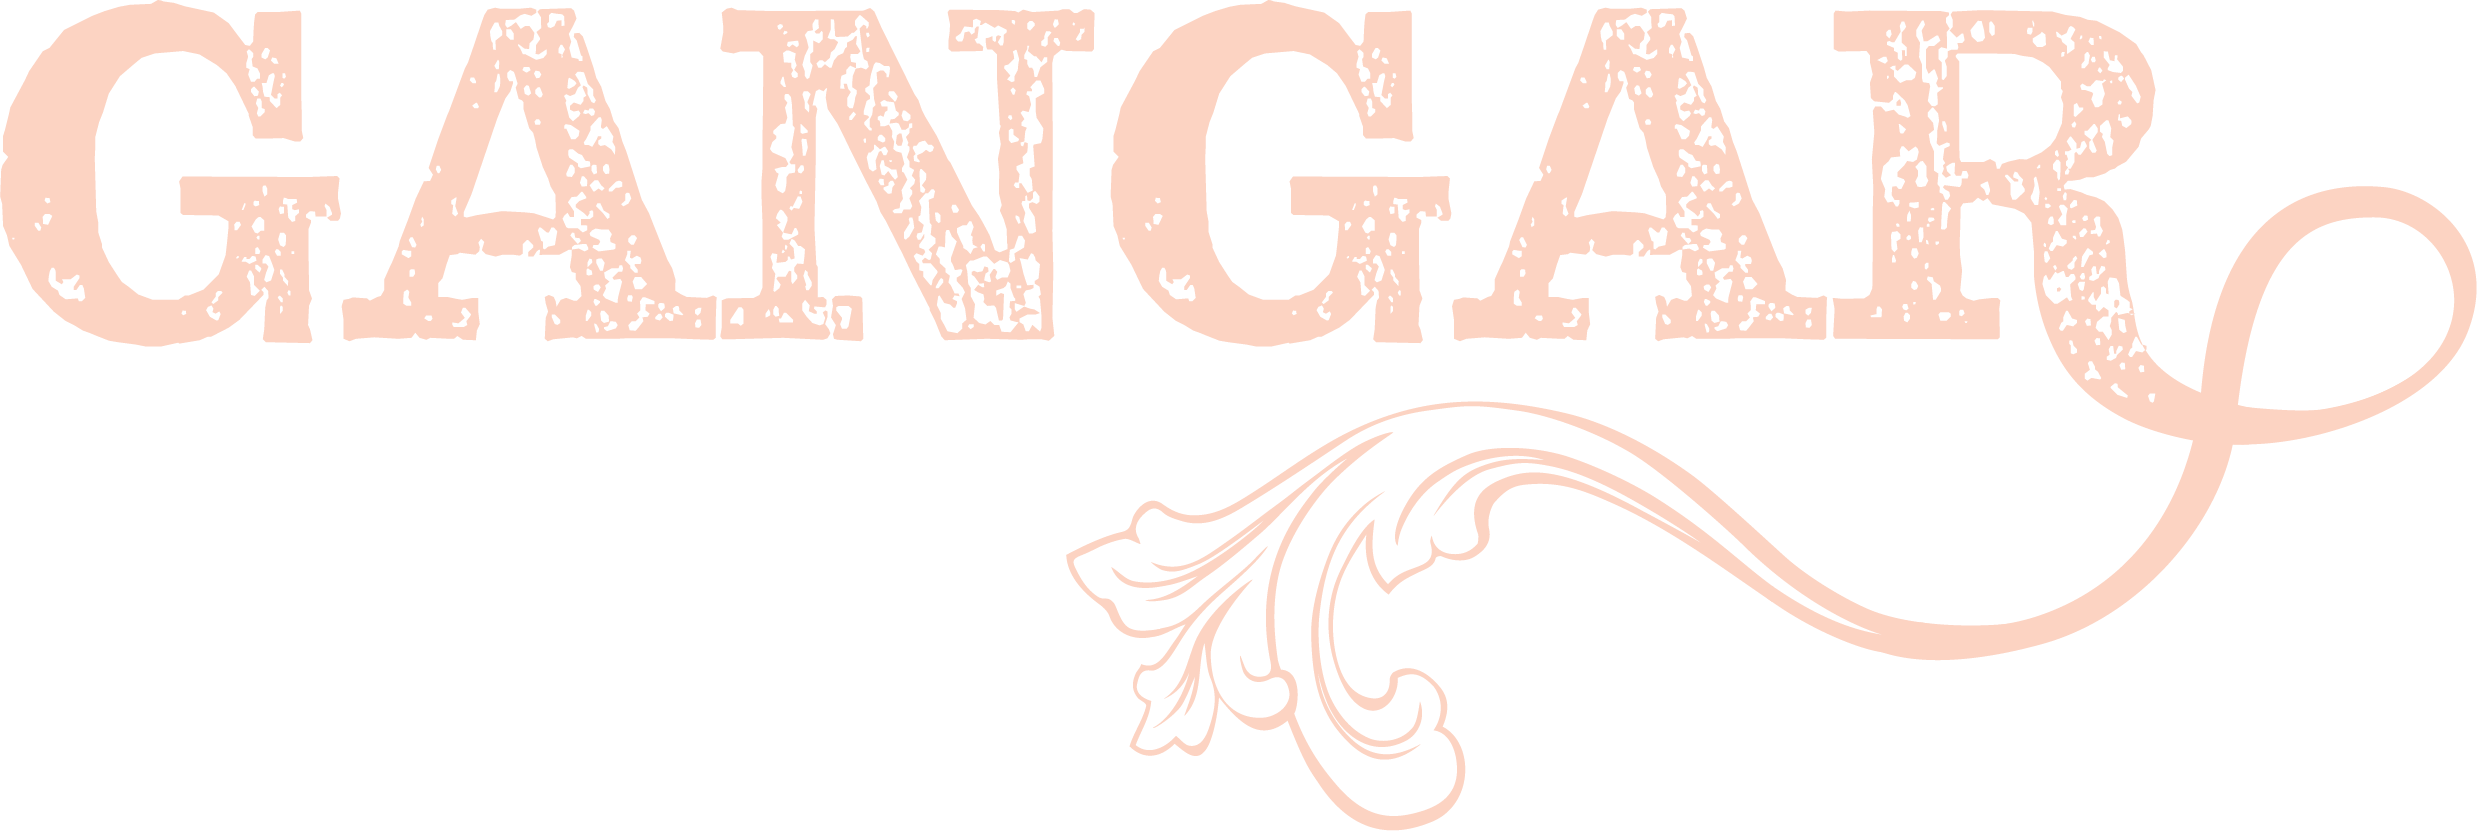 Gangar